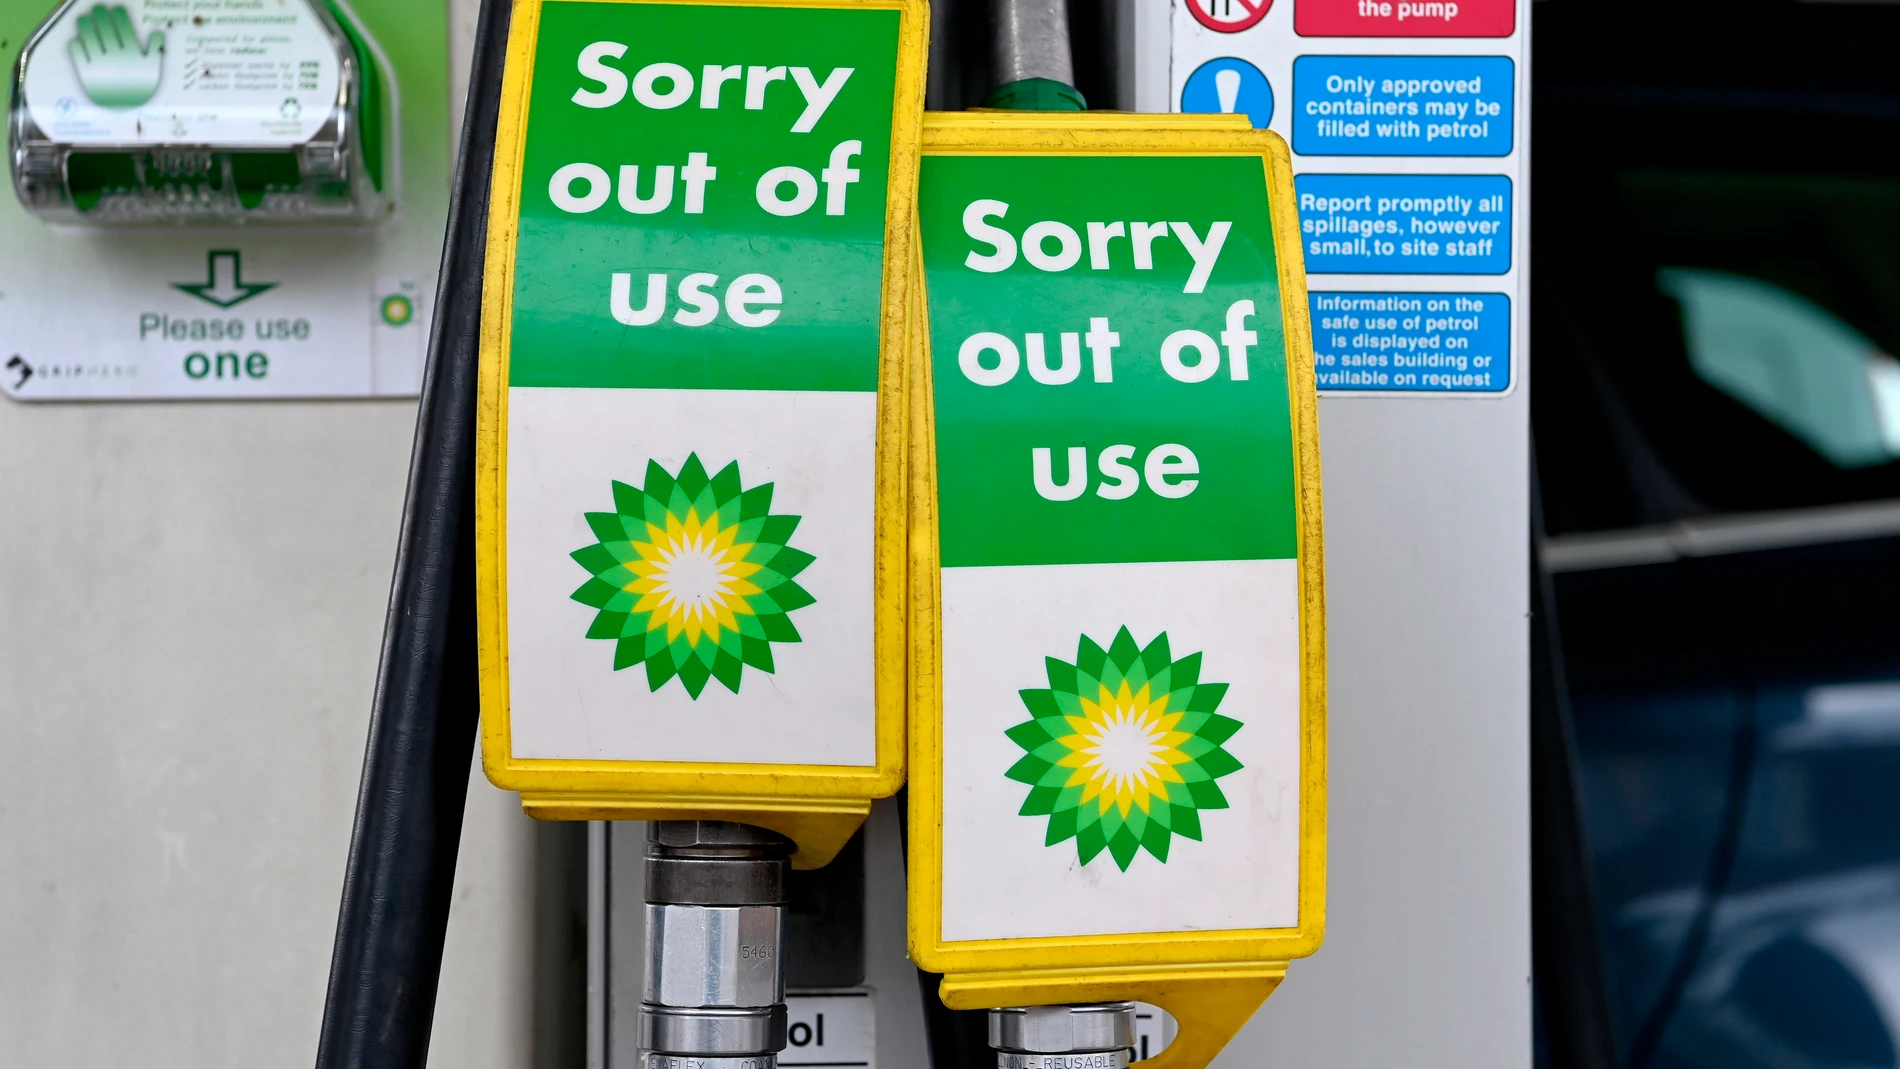 -FOTODELDIA- Londres (Reino Unido) 24/09/2021.- Vista de los surtidores de una gasolinera de BP fuera de servicio en Londres este viernes. La petrolera británica BP informó de que ha cerrado "temporalmente" algunas estaciones de servicio en el Reino Unido ante la falta de suministro tanto de gasolina como de diésel, debido a la crisis que atraviesa el sector del transporte británico. EFE/ Facundo Arrizabalaga